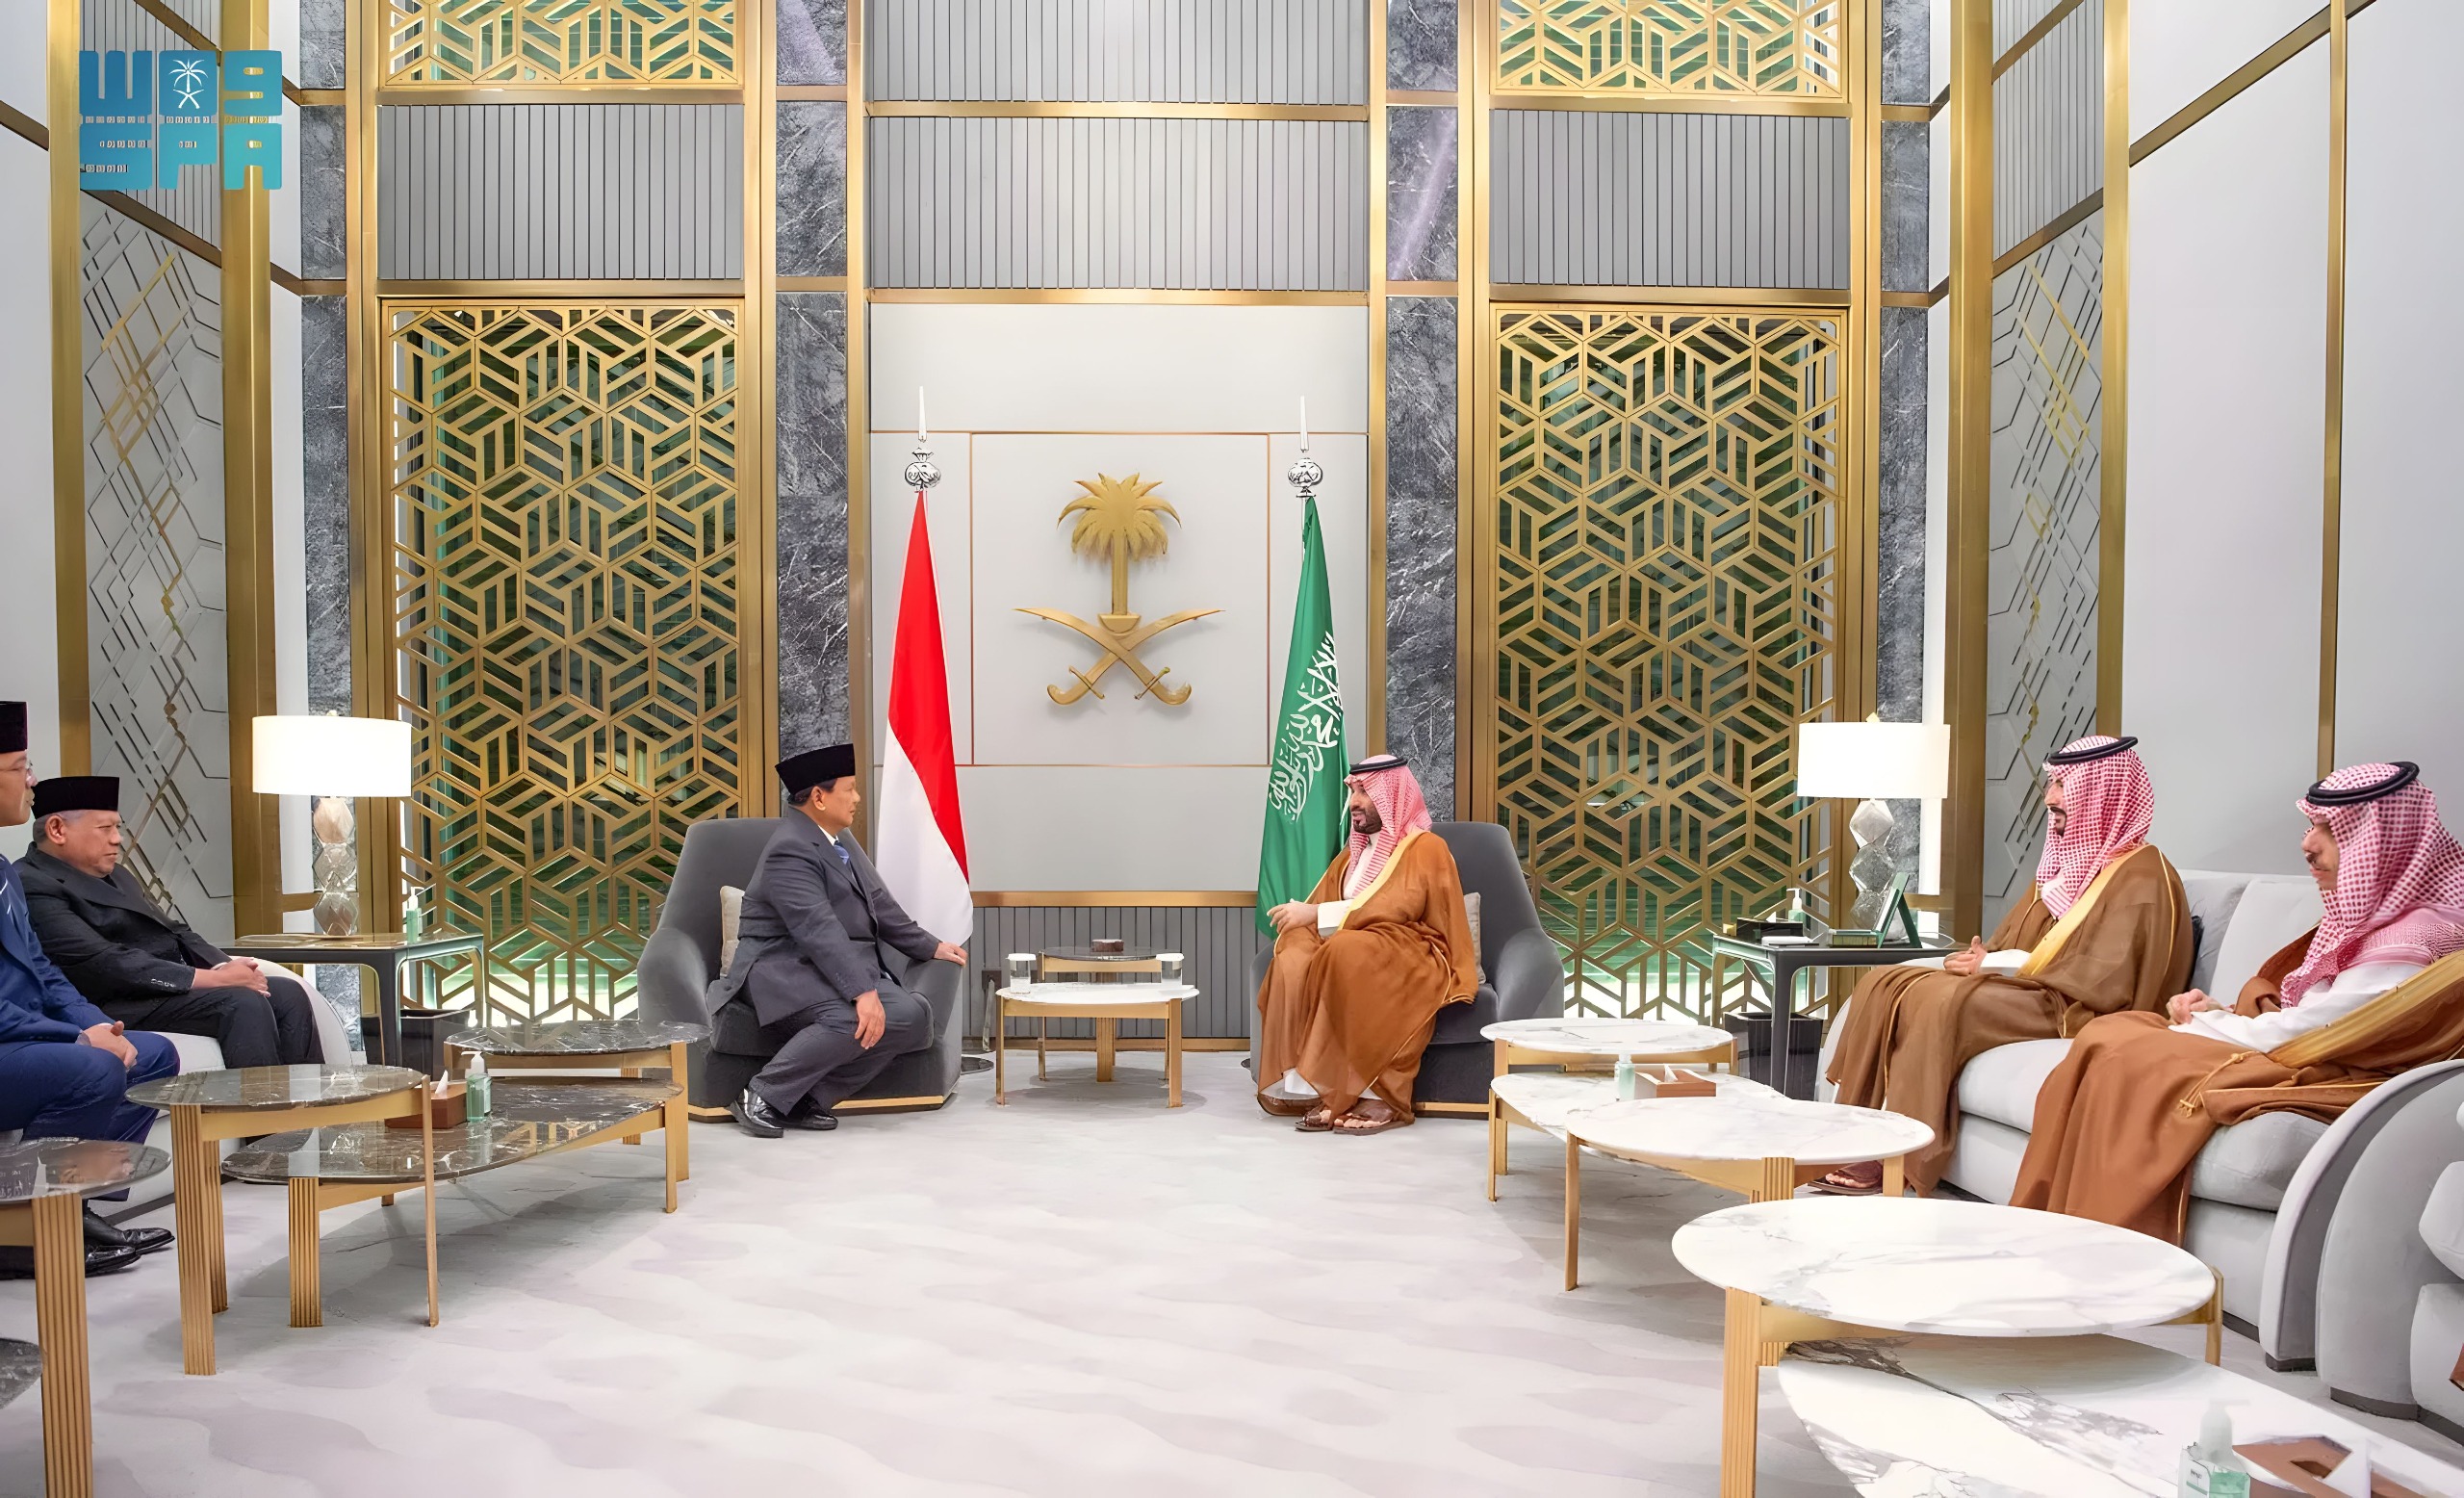 Pertemuan Prabowo dan PM Arab Saudi (Sinpo.id/Tim Media)